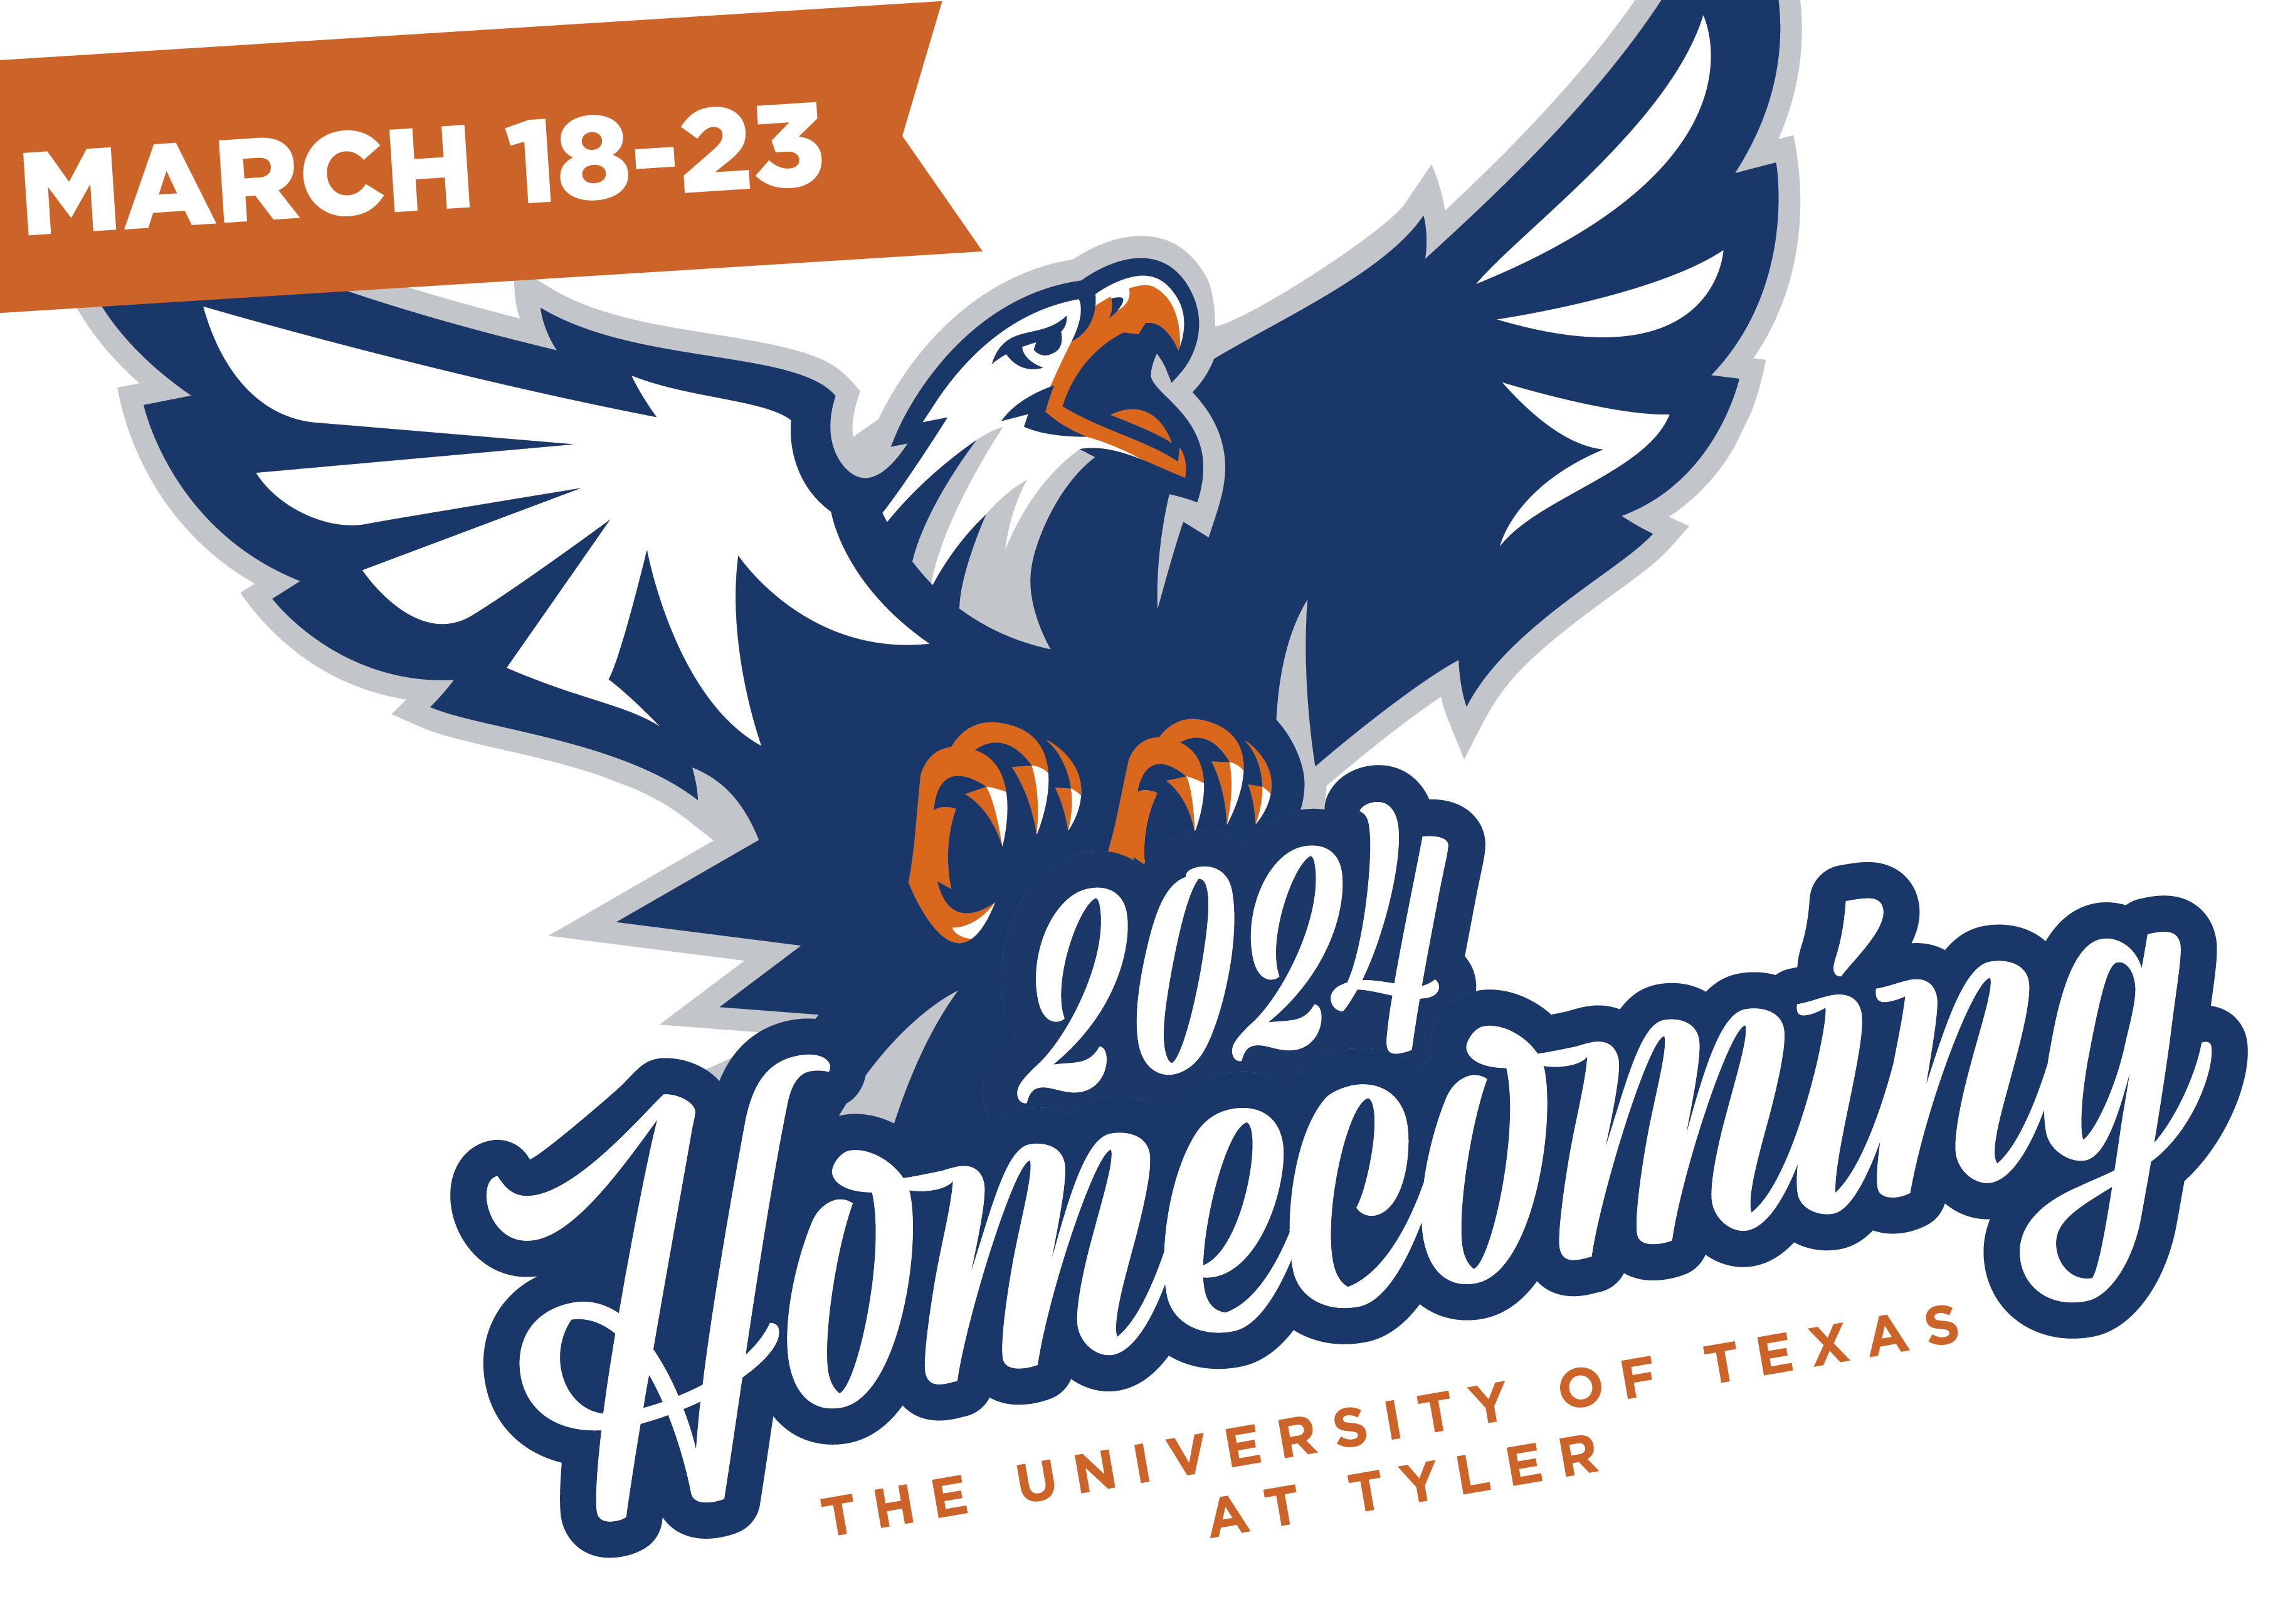 UT Tyler homecoming sponsorship header image